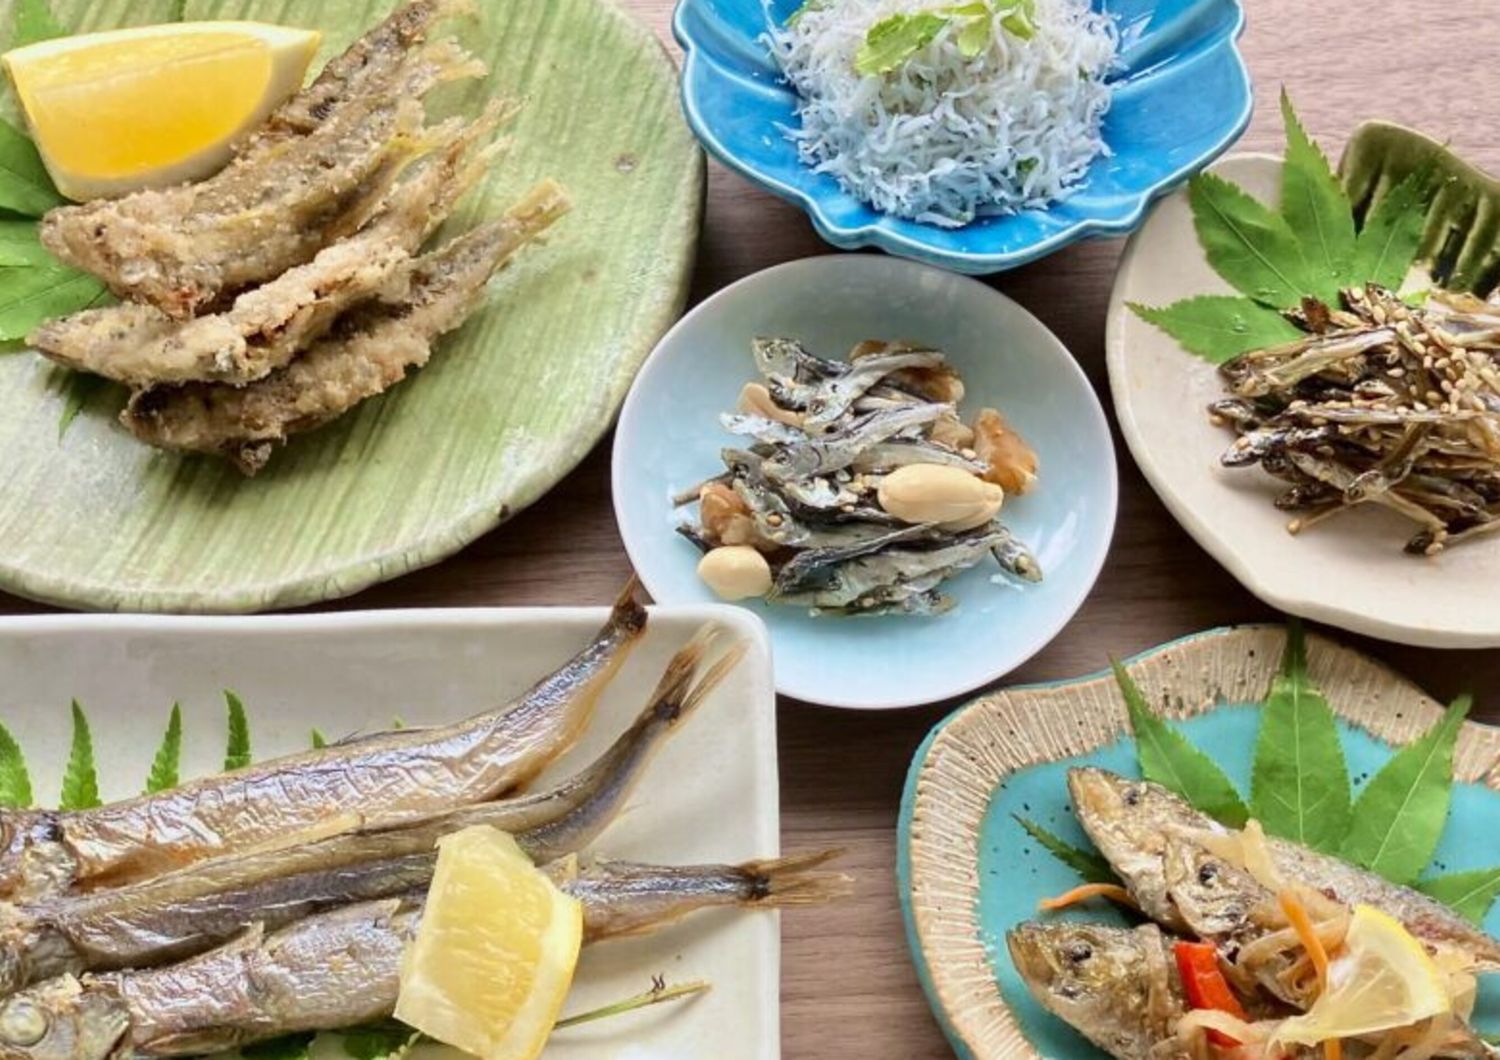 Secondo uno studio giapponese, mangiare piccoli pesci interi può prolungare l’aspettativa di vita